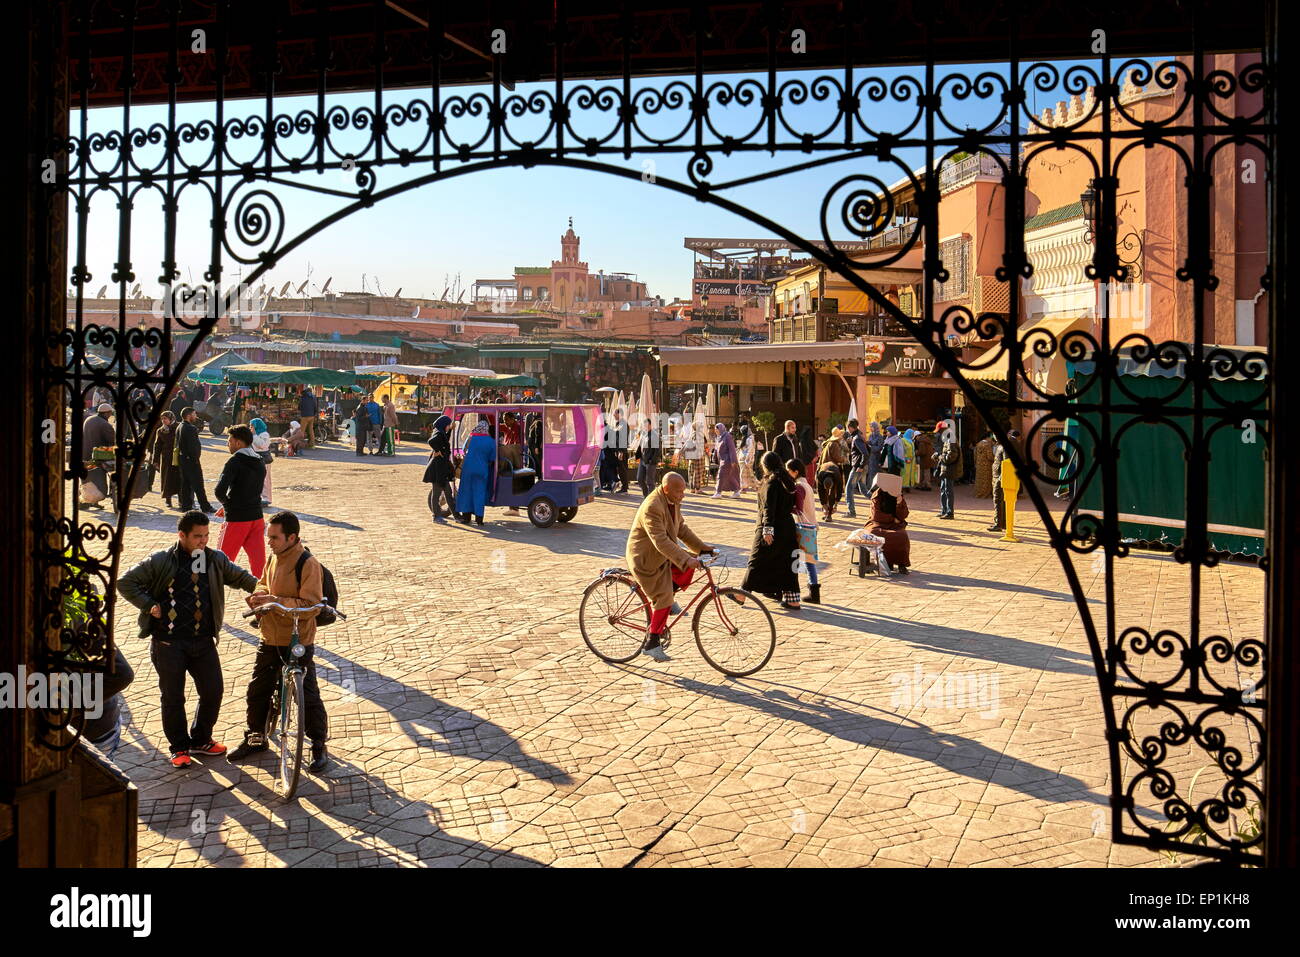 Médina de Marrakech. Place Jemaa el Fna en début d'après-midi. Maroc Banque D'Images